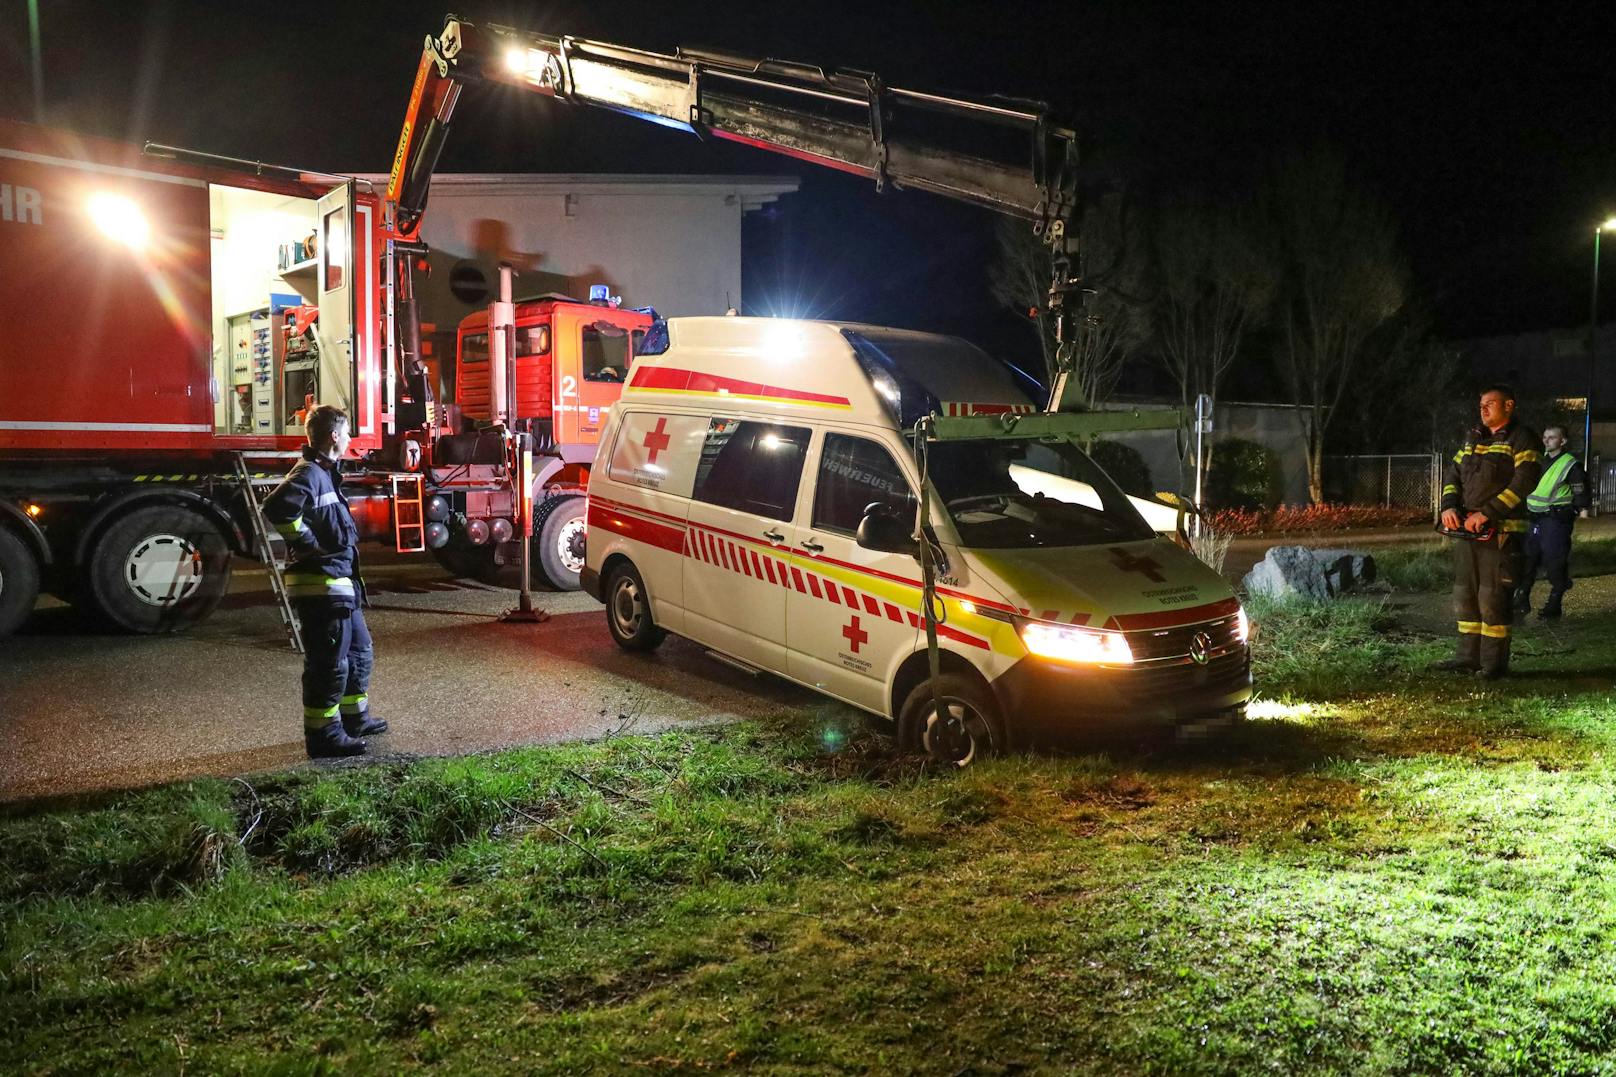 Rettungsauto holt Patient ab und bleibt in Wiese stecken